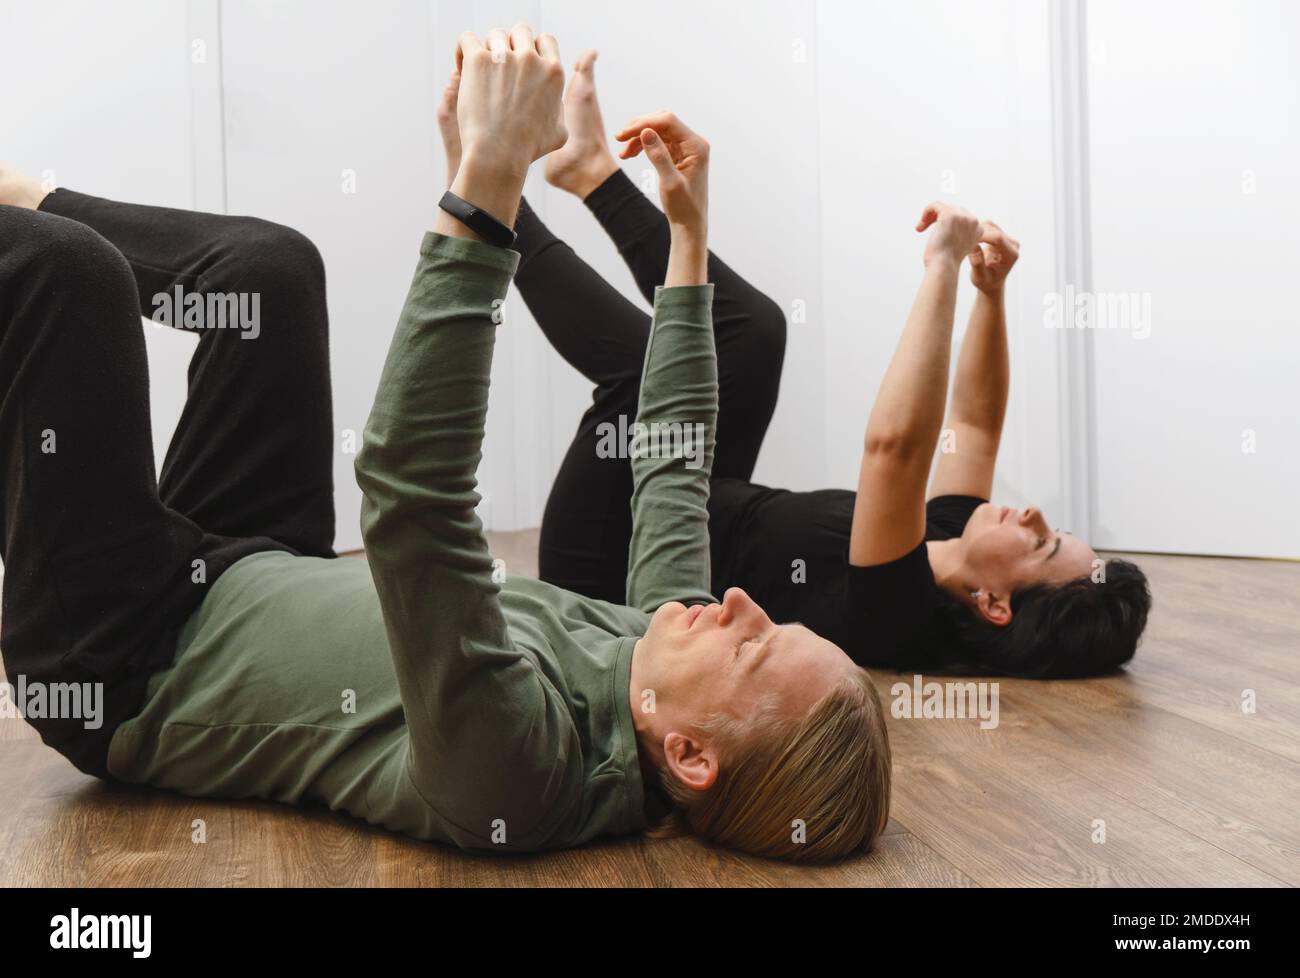 Rehabilitationsübungen. Physikalisches Therapiekonzept. Zwei Personen, die mit erhobenen Händen und Beinen auf dem Boden liegen, verbessern die Lymphe und den Blutfluss Stockfoto